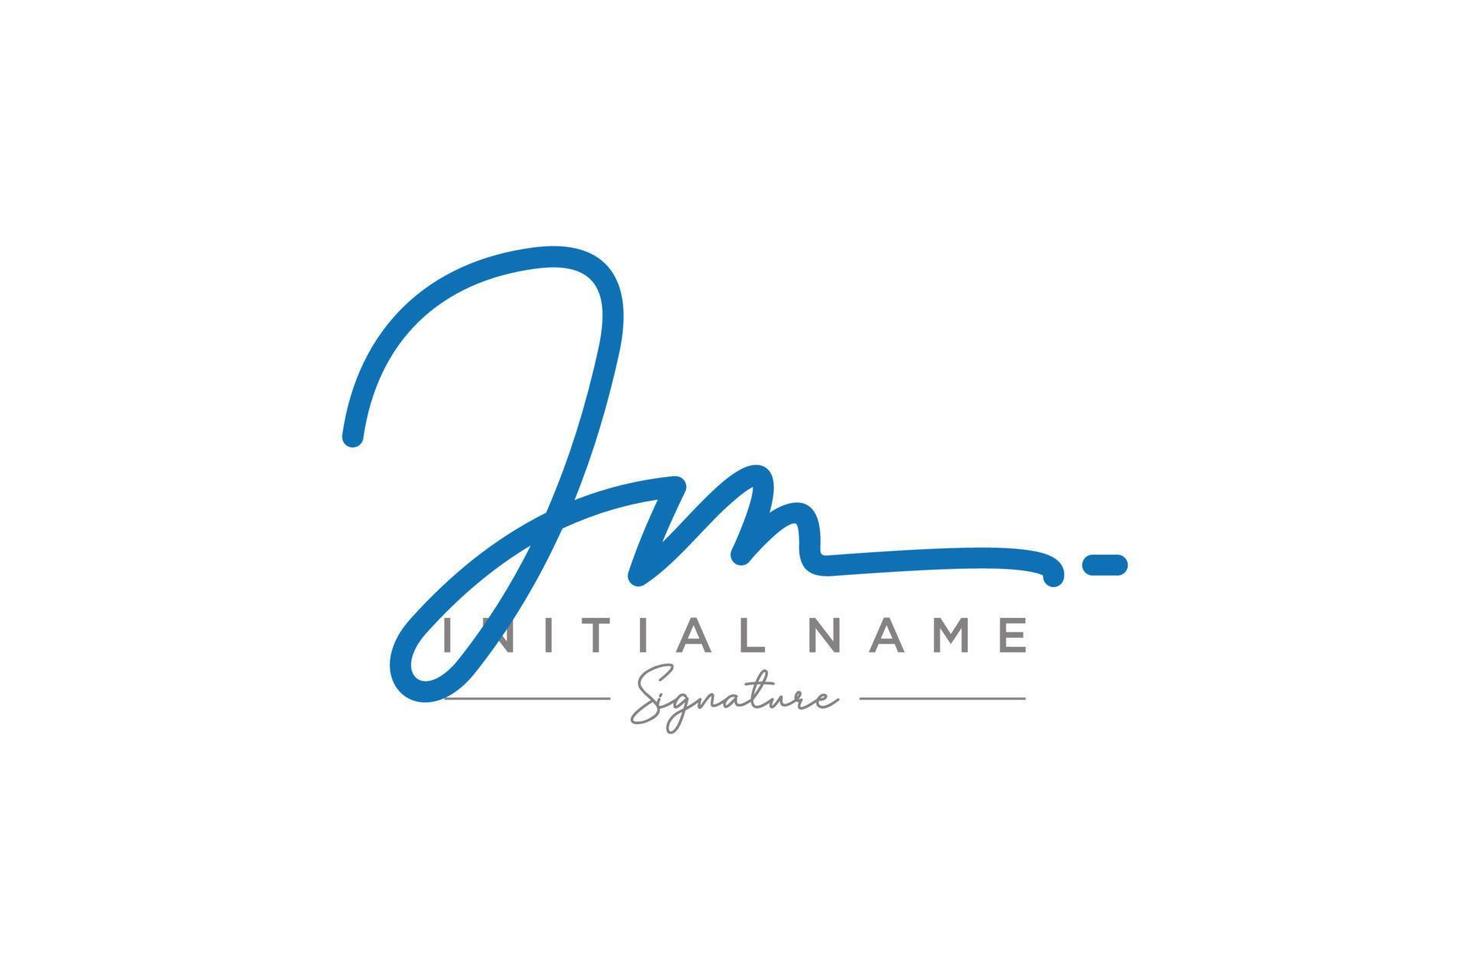 vetor inicial de modelo de logotipo de assinatura jm. ilustração vetorial de letras de caligrafia desenhada à mão.